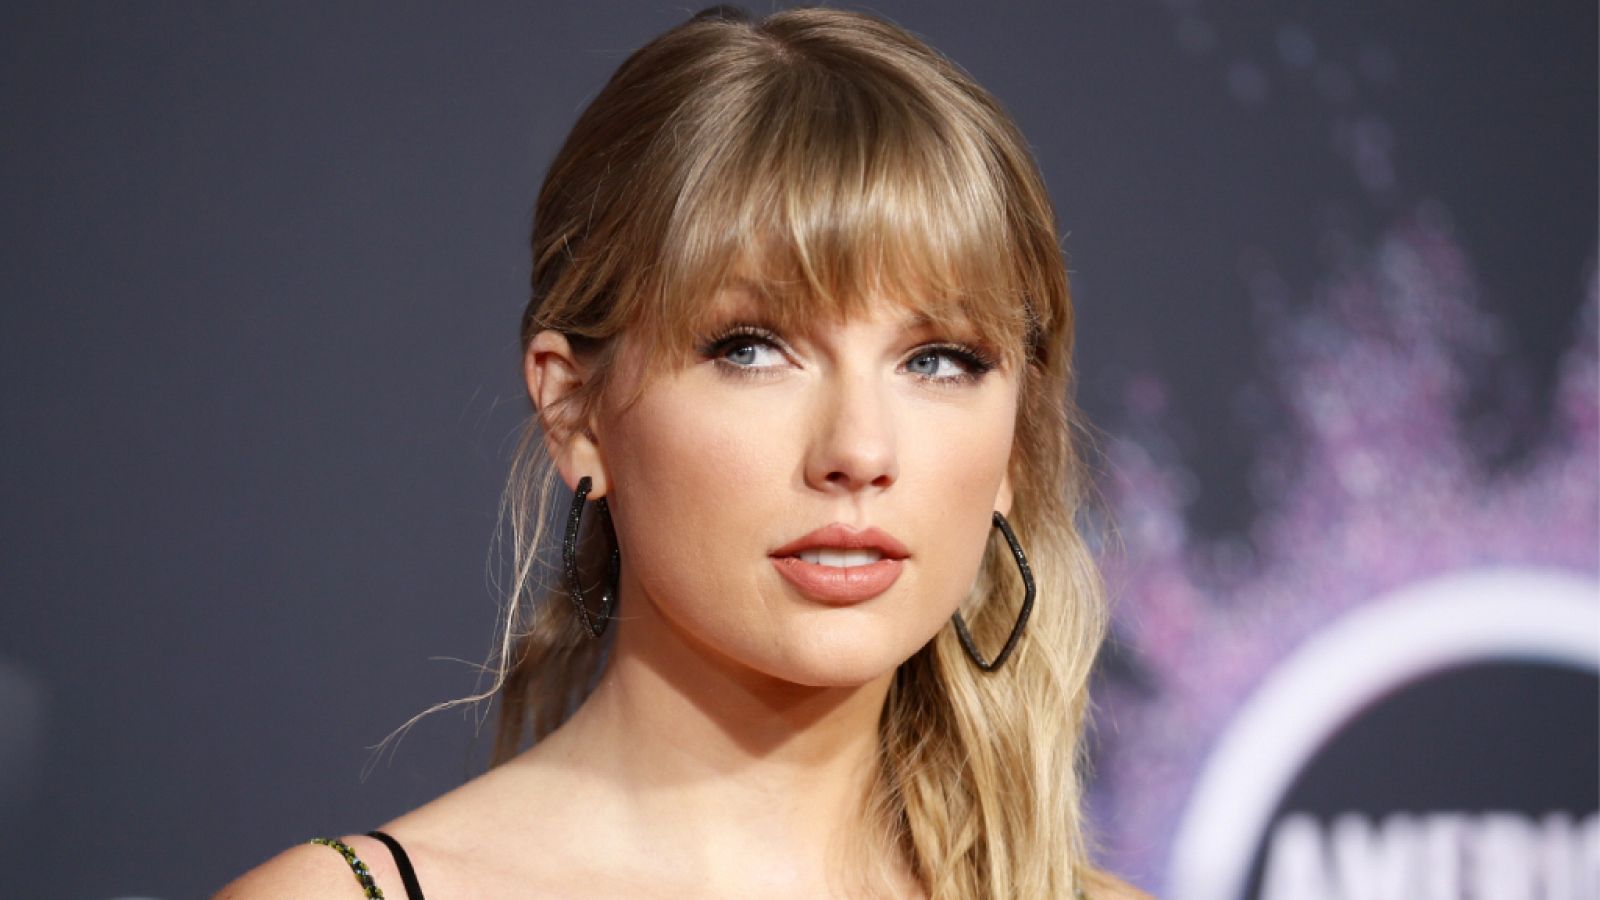  Taylor Swift se convierte en la artista con más ventas en EEUU